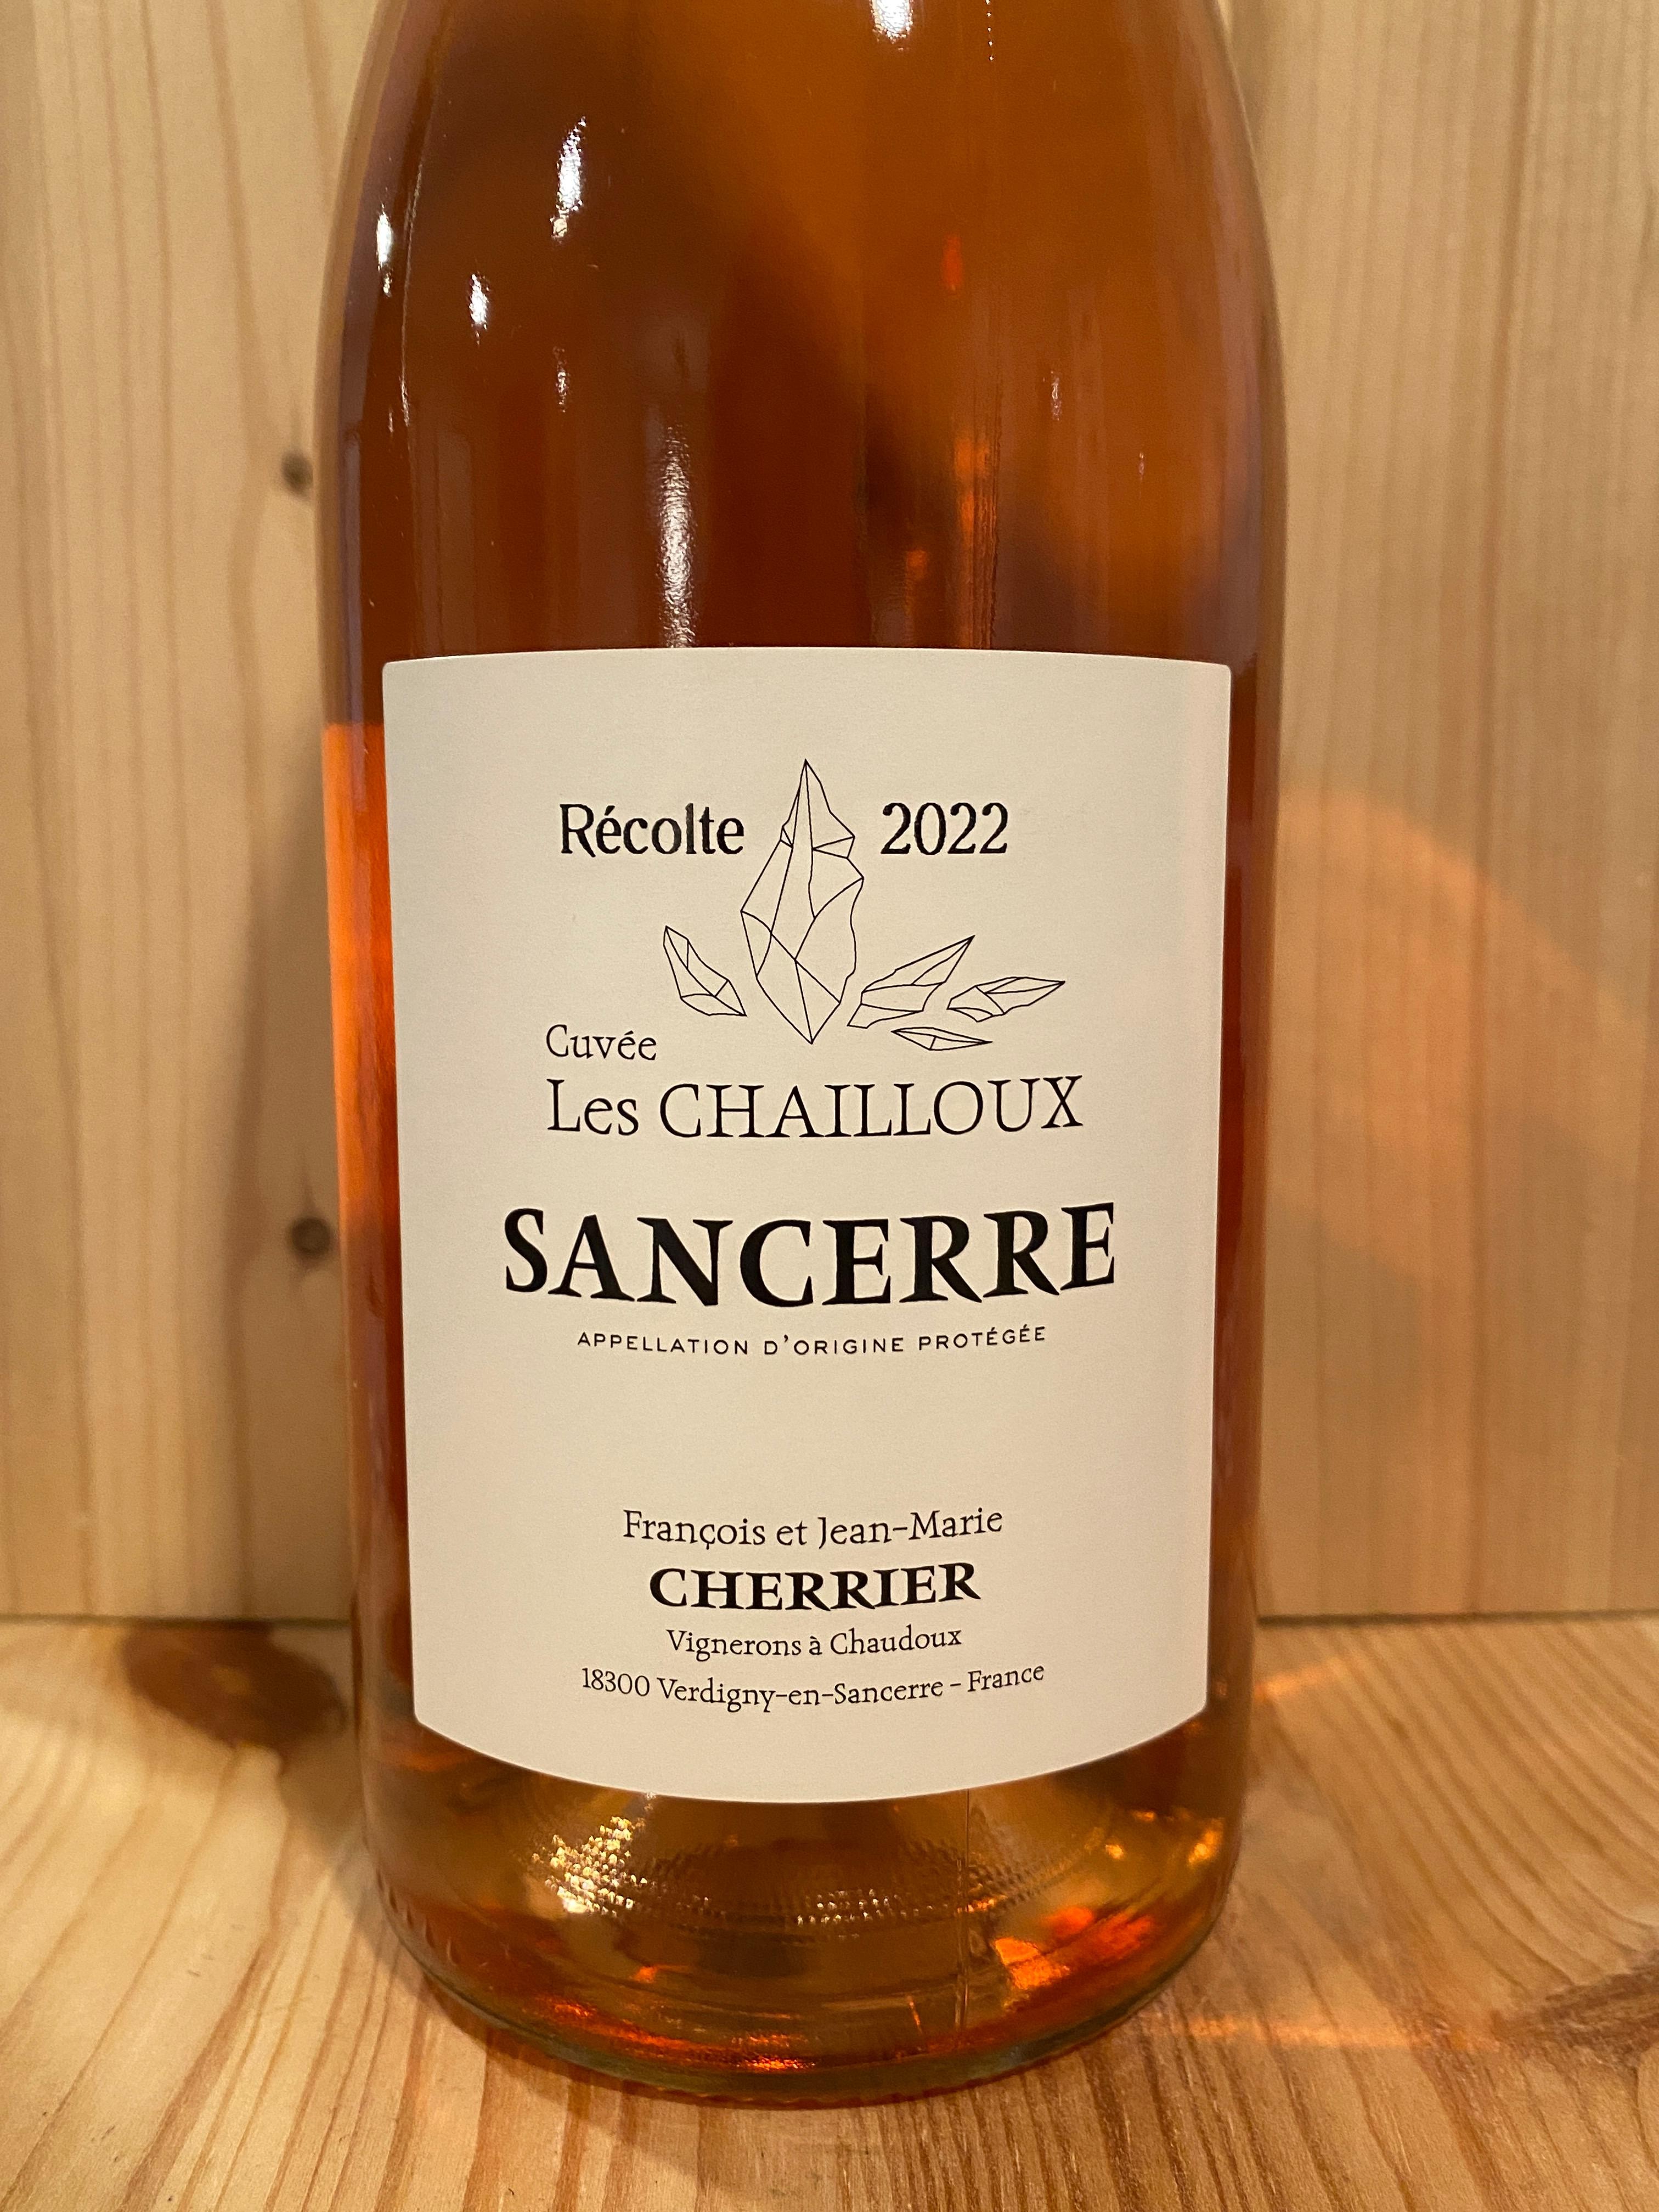 François et Jean-Marie Cherrier "Les Chailloux" Sancerre Rosé 2022: Loire Valley, France